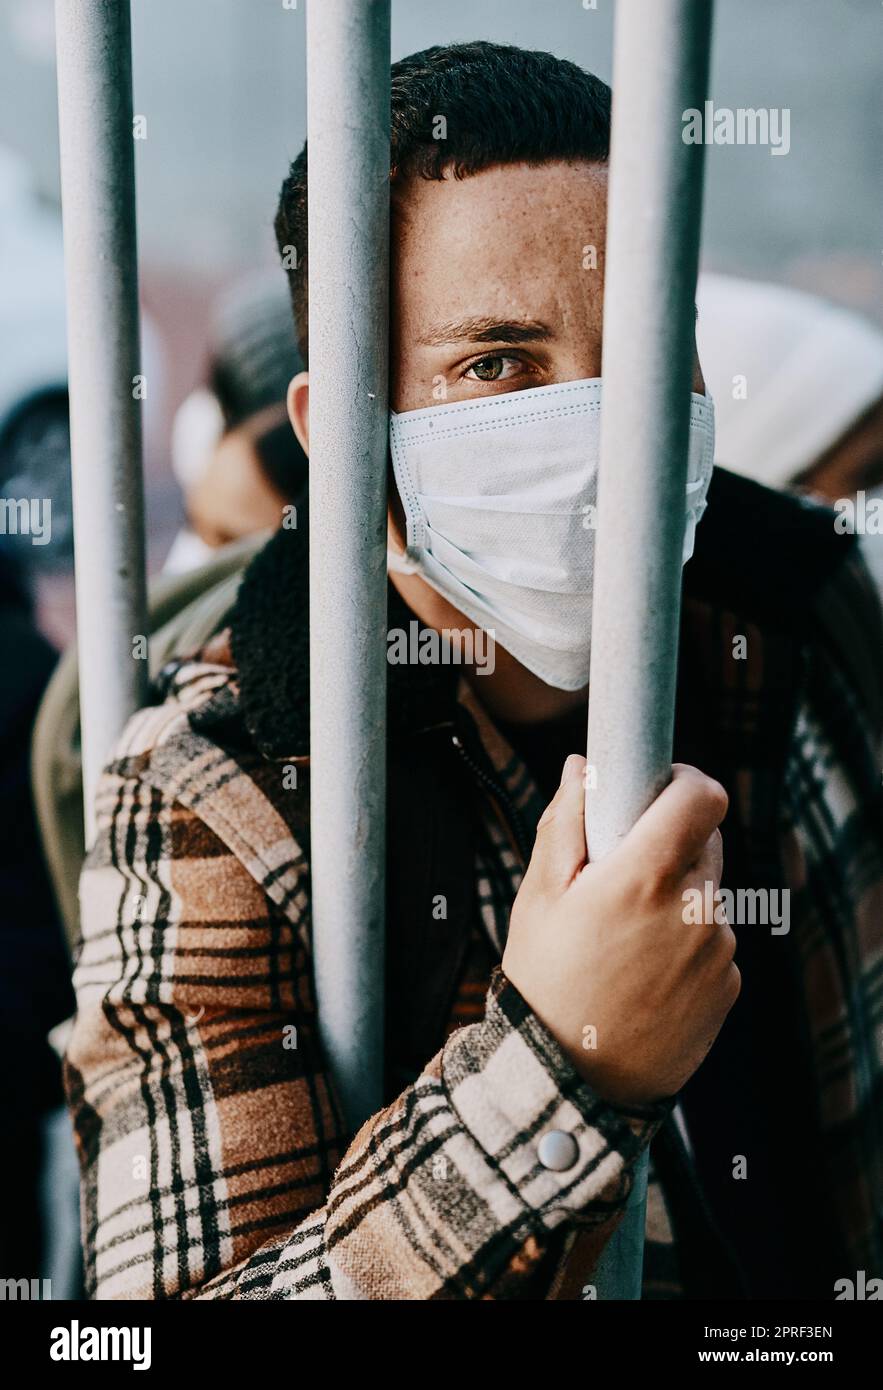 Malato, rifugiato di un giovane paziente covid in quarantena per attraversare il confine con una maschera medica. Uomo straniero in una folla di carceri durante una pandemia seguendo le norme di sicurezza sanitaria del virus. Foto Stock